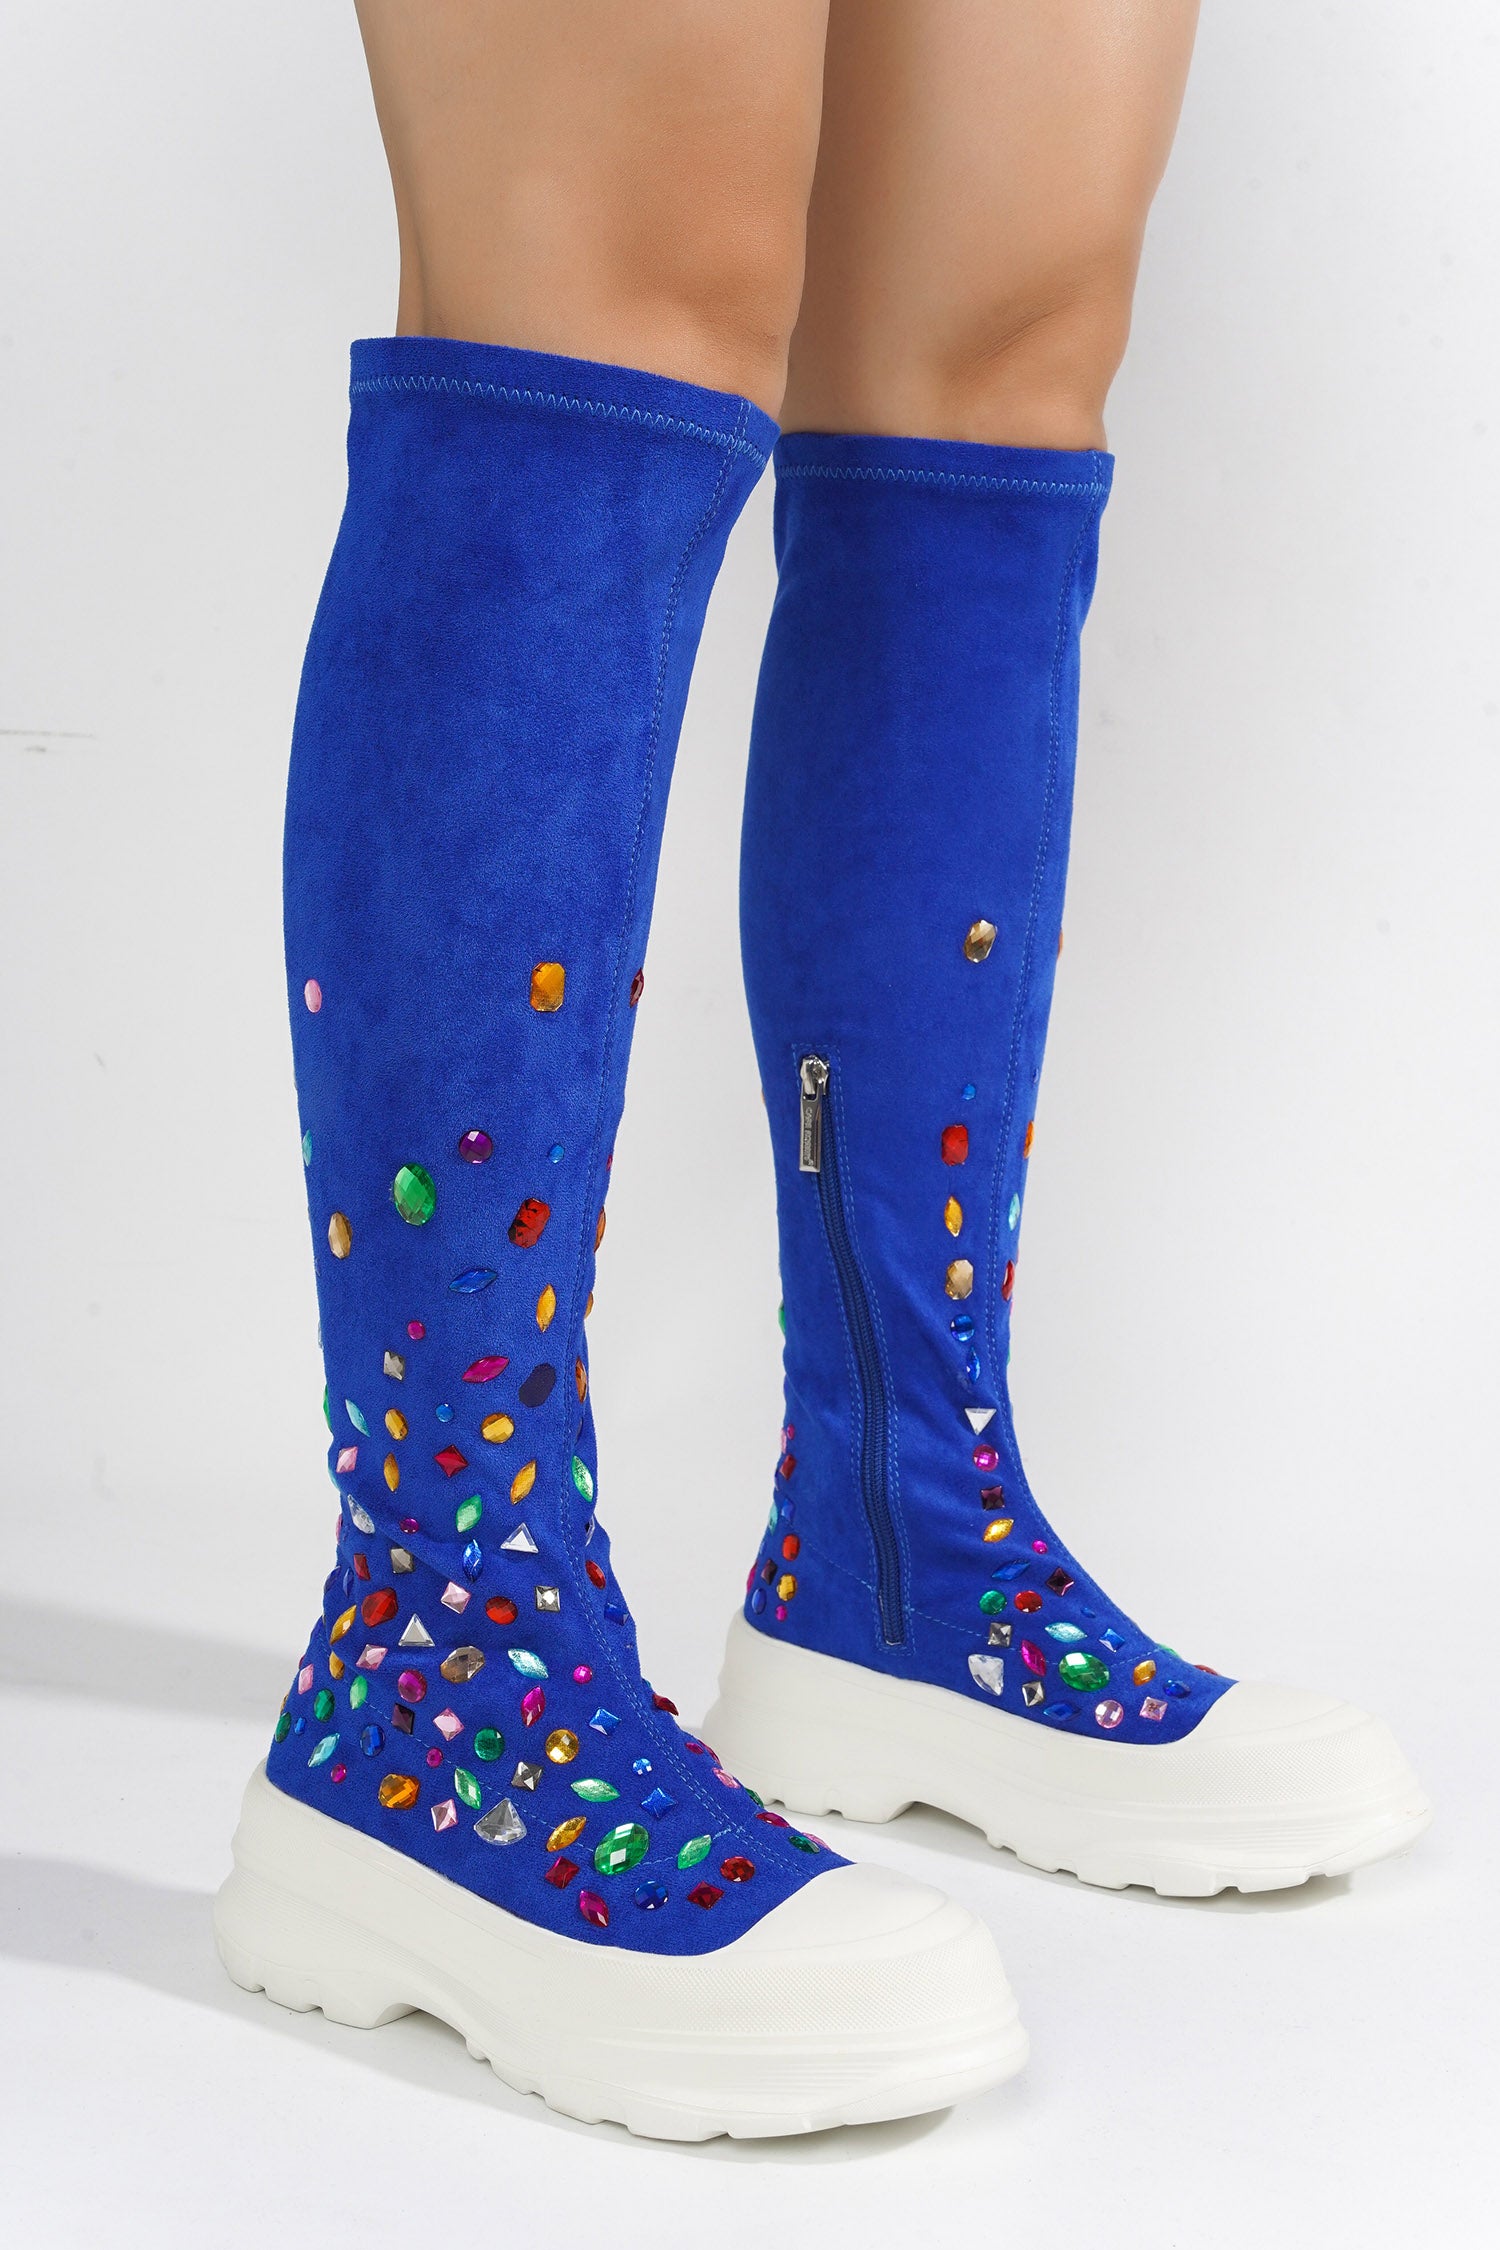 UrbanOG - Reesy Sock with Gems Knee High Sneakers - SNEAKERS